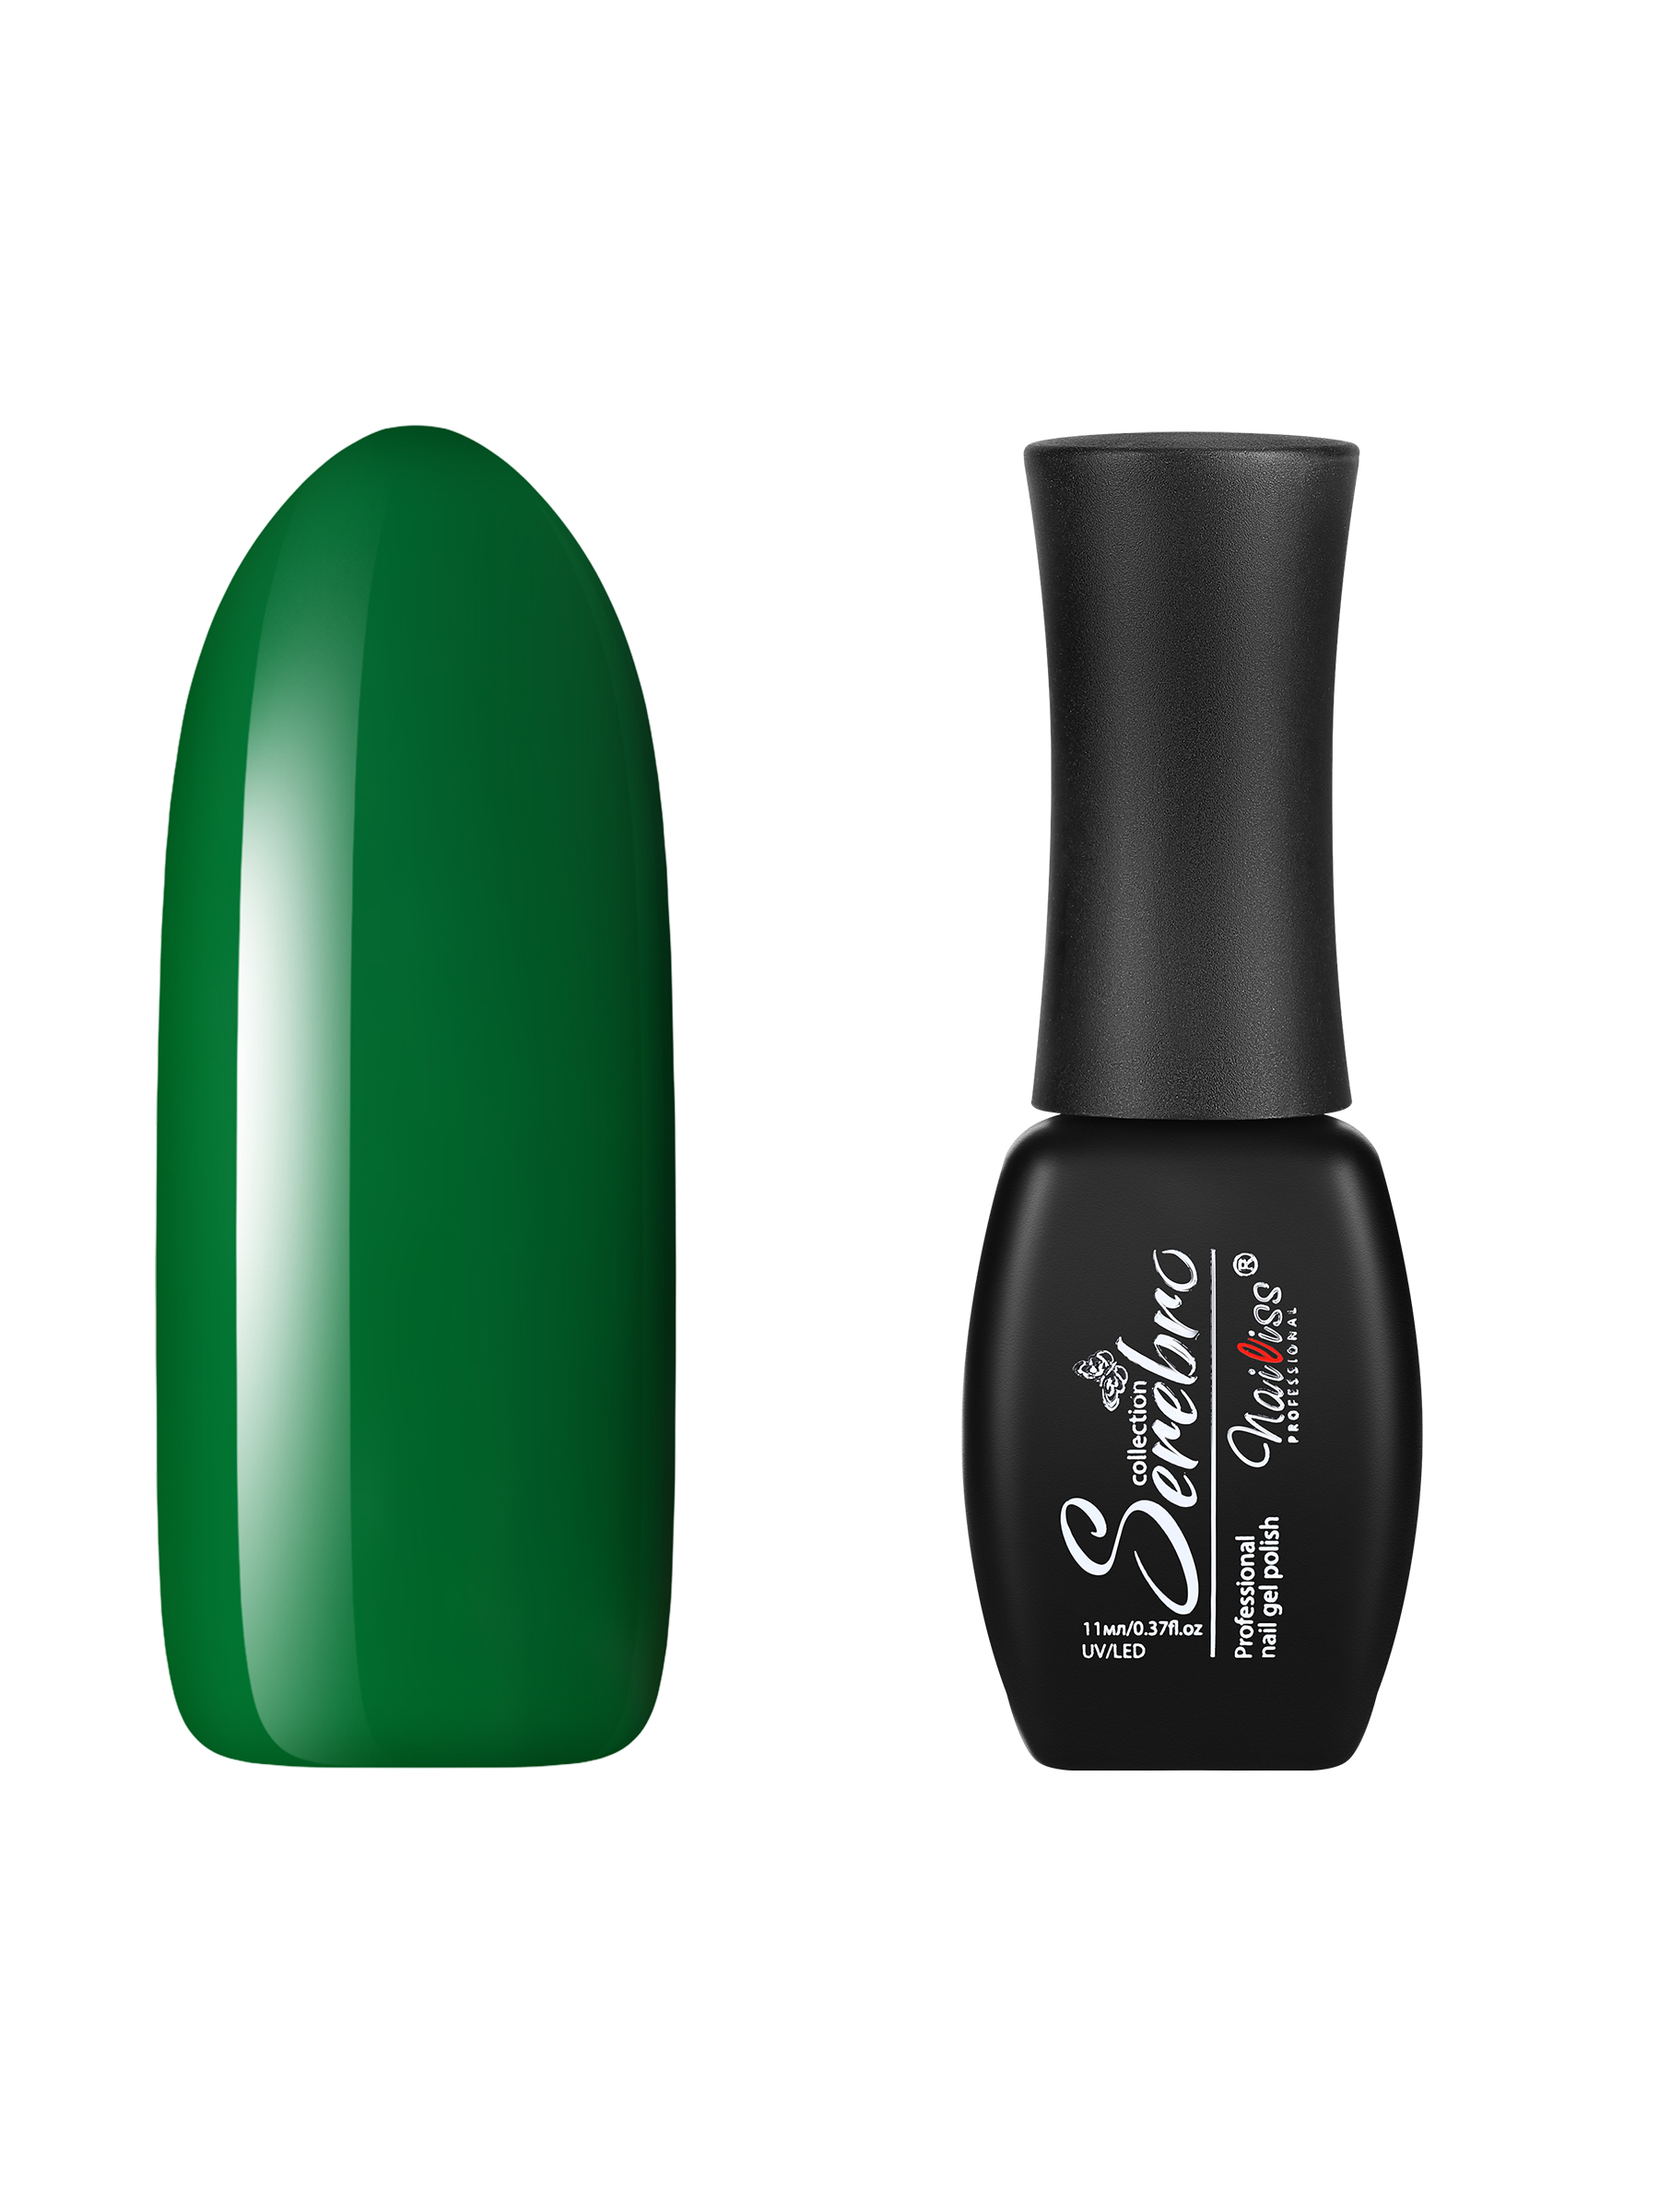 Гель-лак для ногтей Serebro, плотный, цветной, гипоаллергенный, насыщенный, зеленый, 11 мл крыжовник малахит